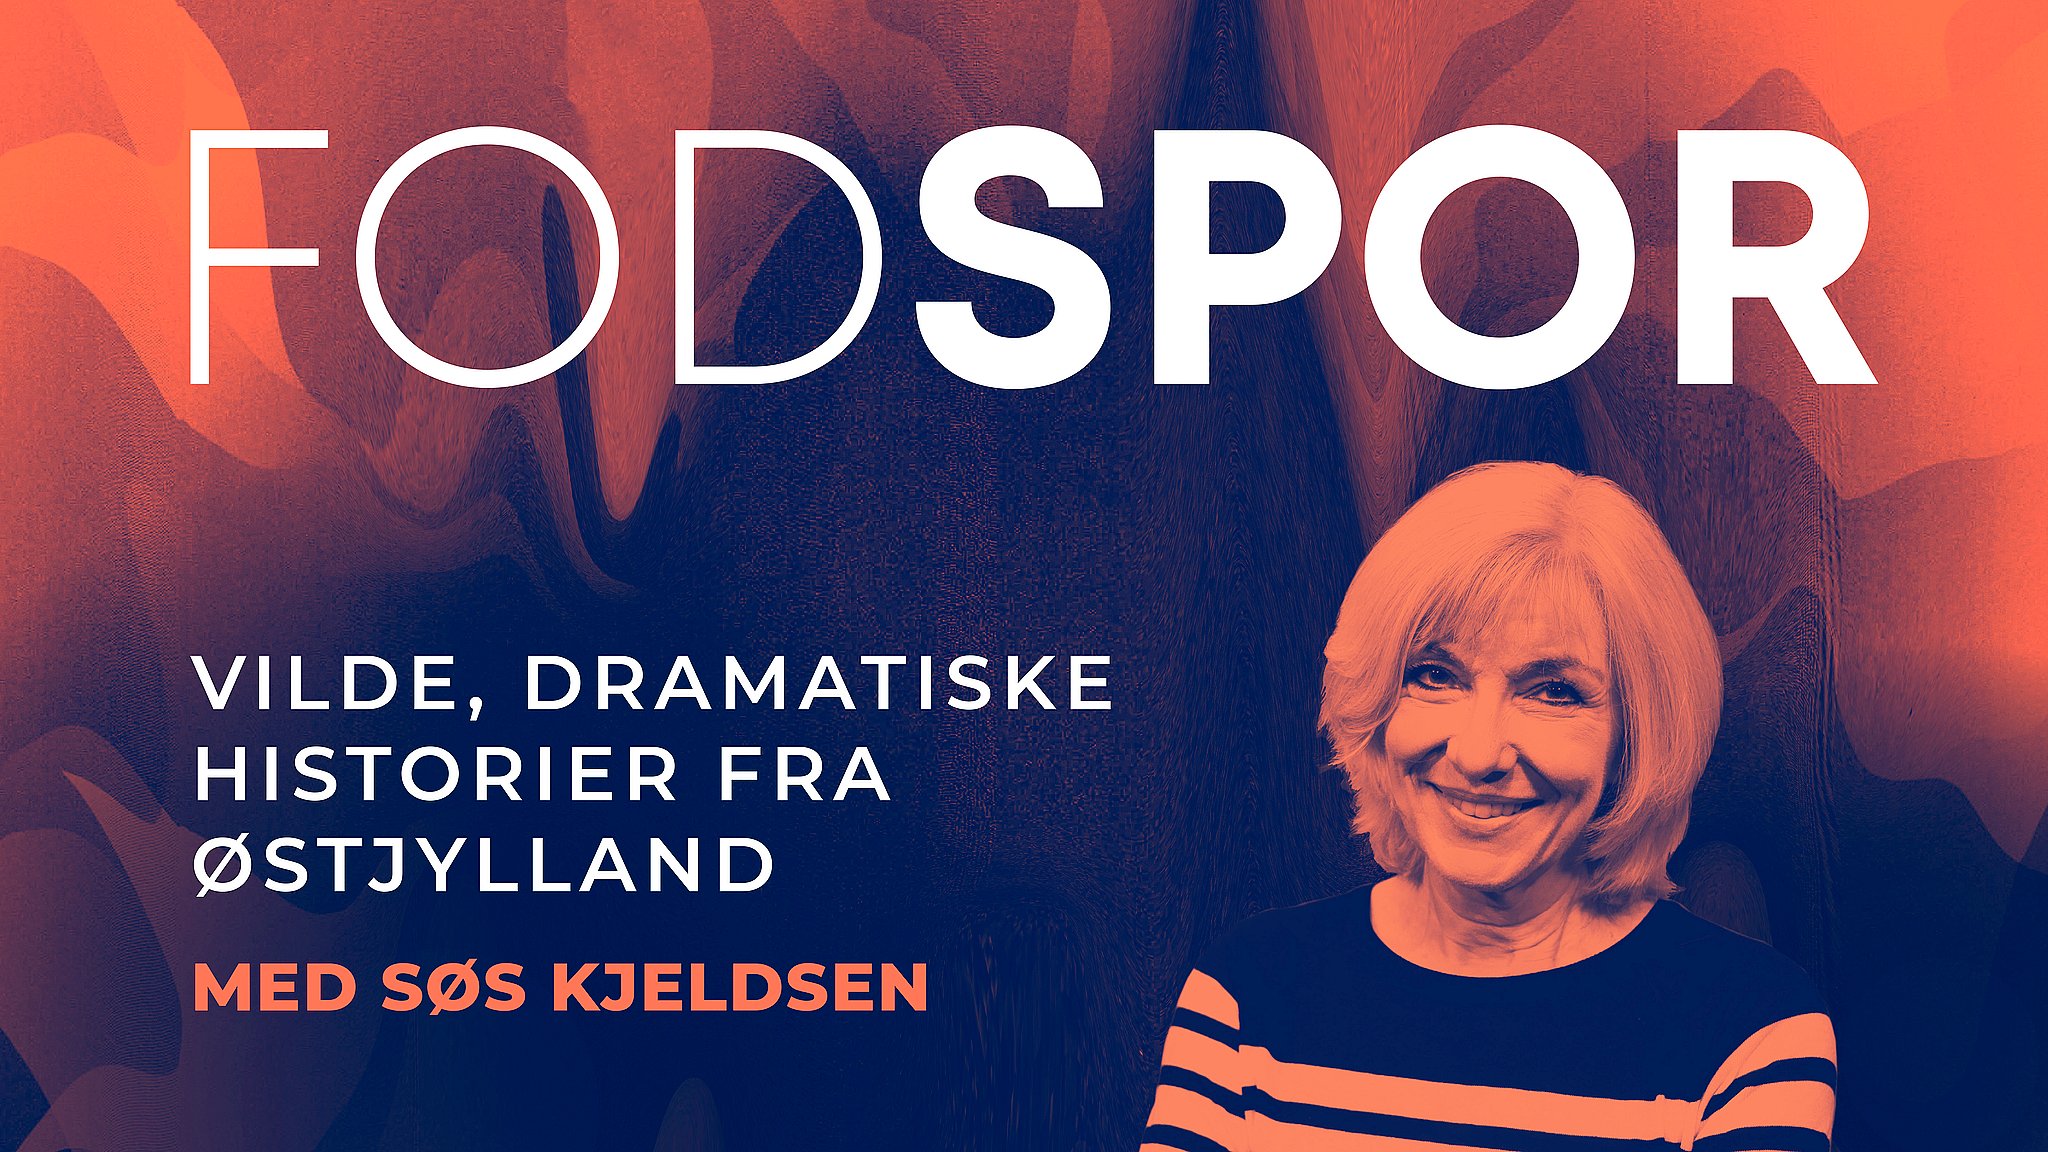 Lyt her: Ny podcast går i fodsporene på dem der formede vores samfund Østjylland